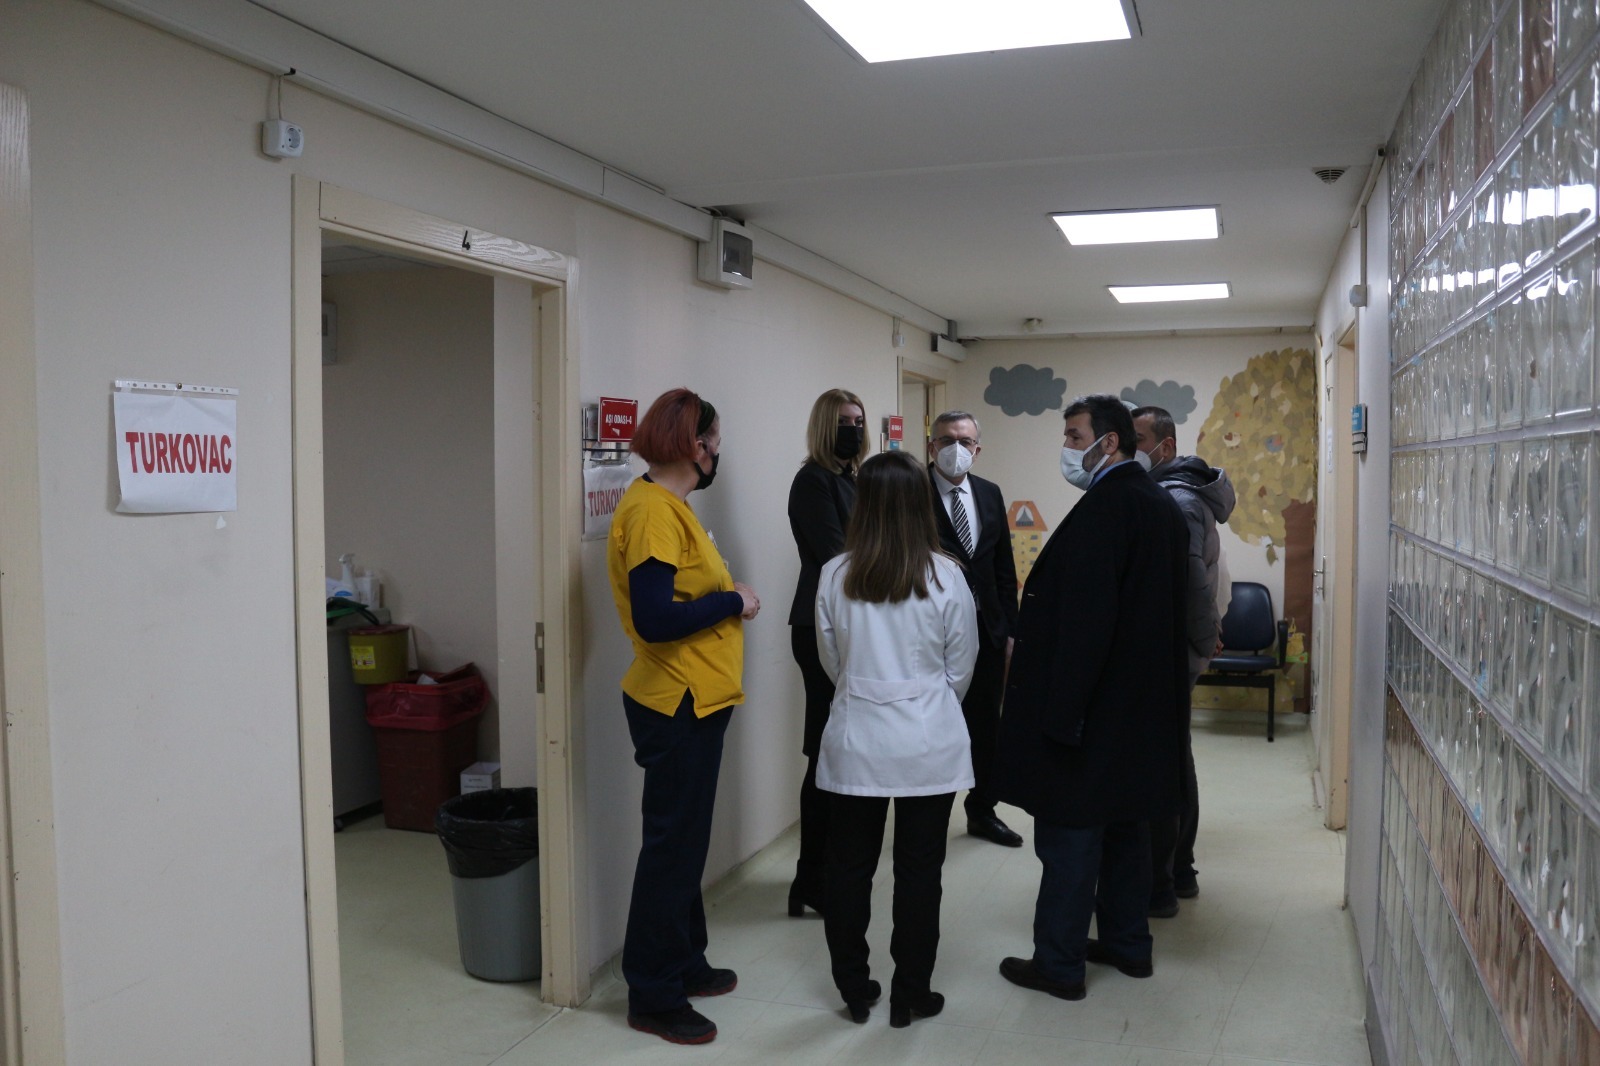 İl Sağlık Müdürü Pehlevan’dan Hastaneye ‘Turkovac’ Çıkarması